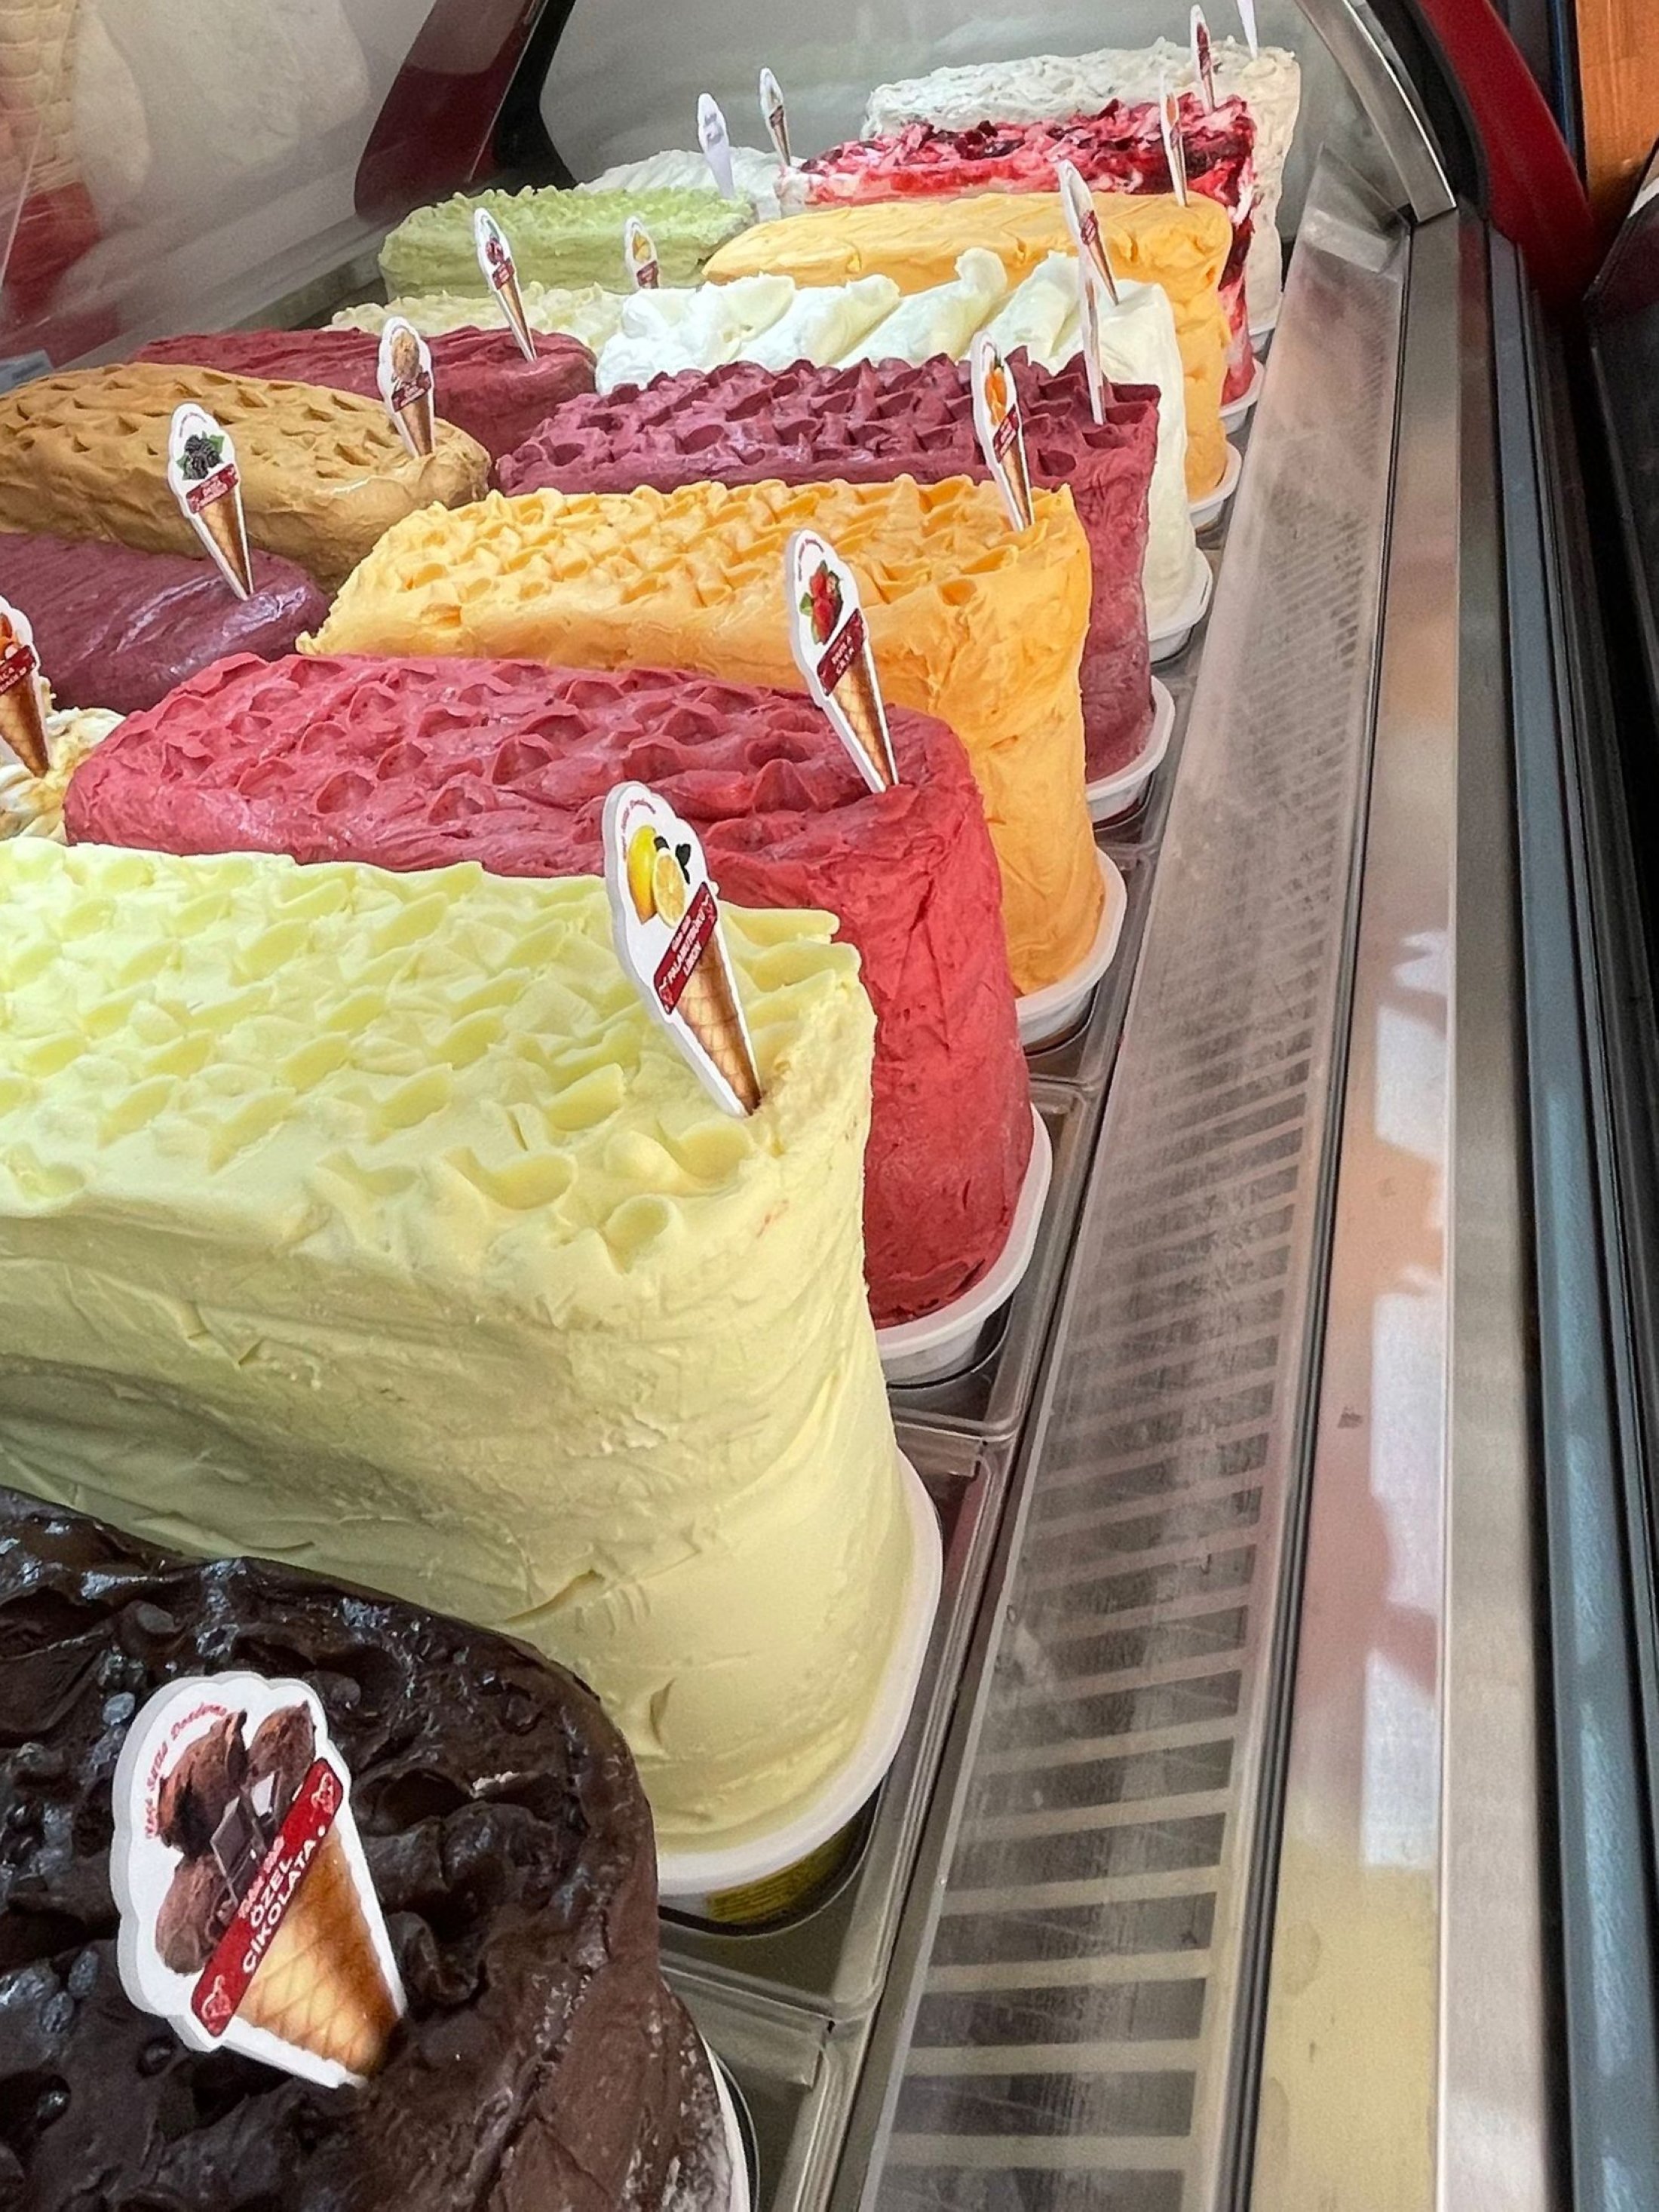 Muğla, Türkiye'deki Tekin Usta Keçi Sütü Dondurma Dükkanı'nda çeşitli dondurma lezzetleri.  (Fotoğraf, Laila Yvonne Argyll'in izniyle)